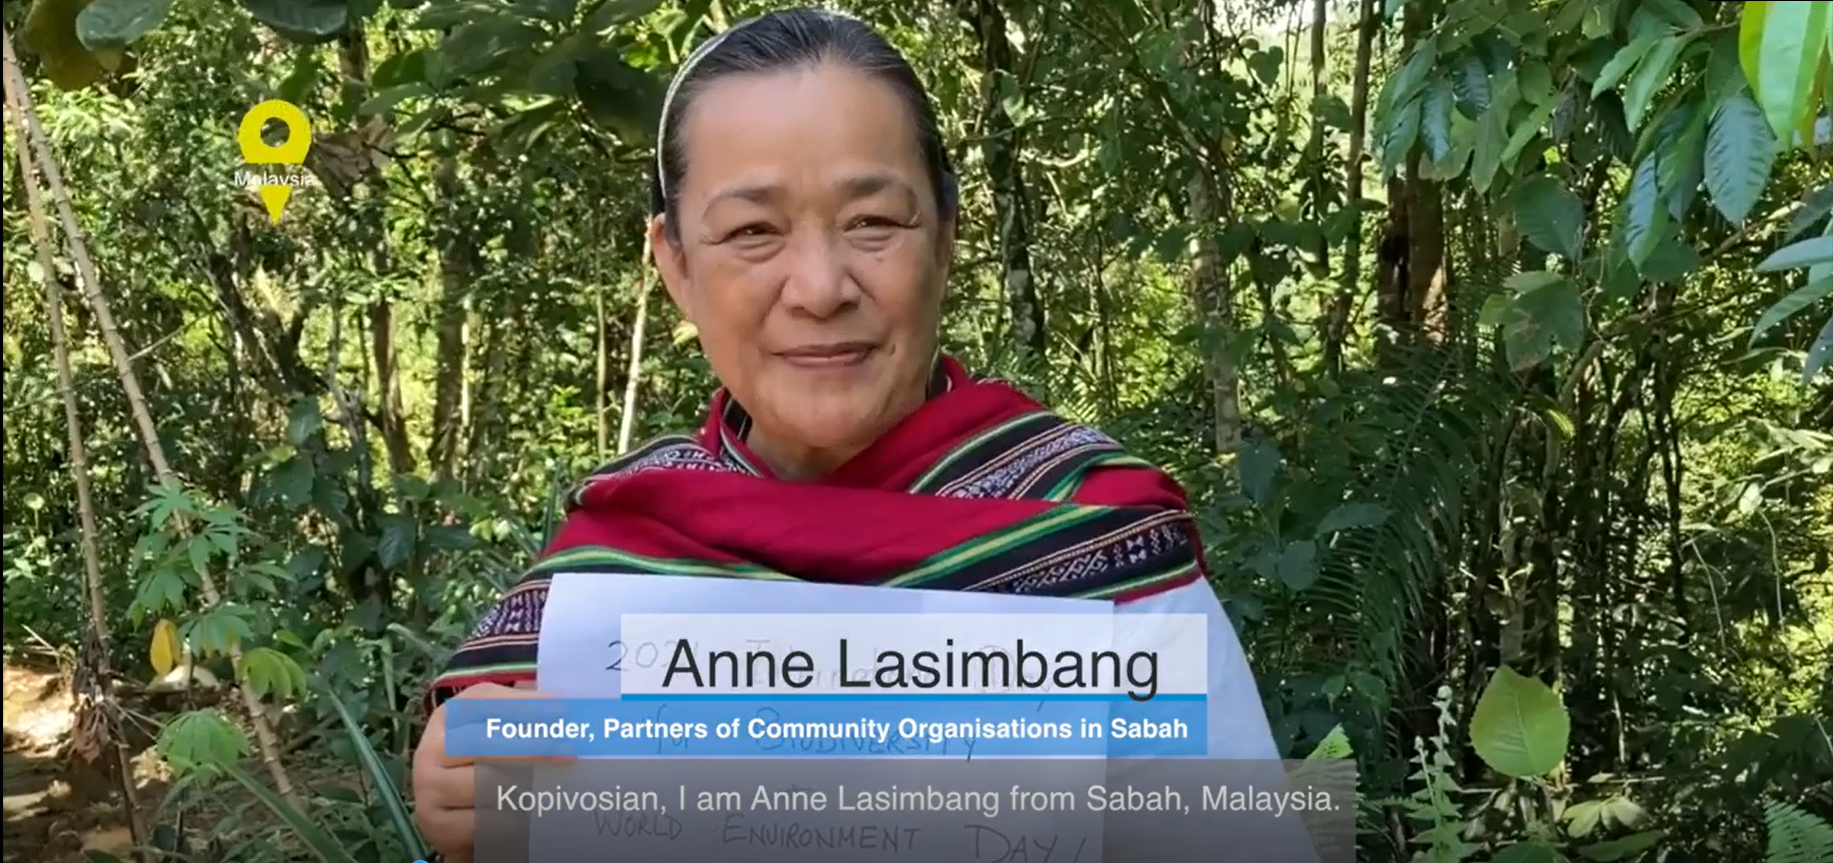 Ms. Anne Lasimbang, Malaysia